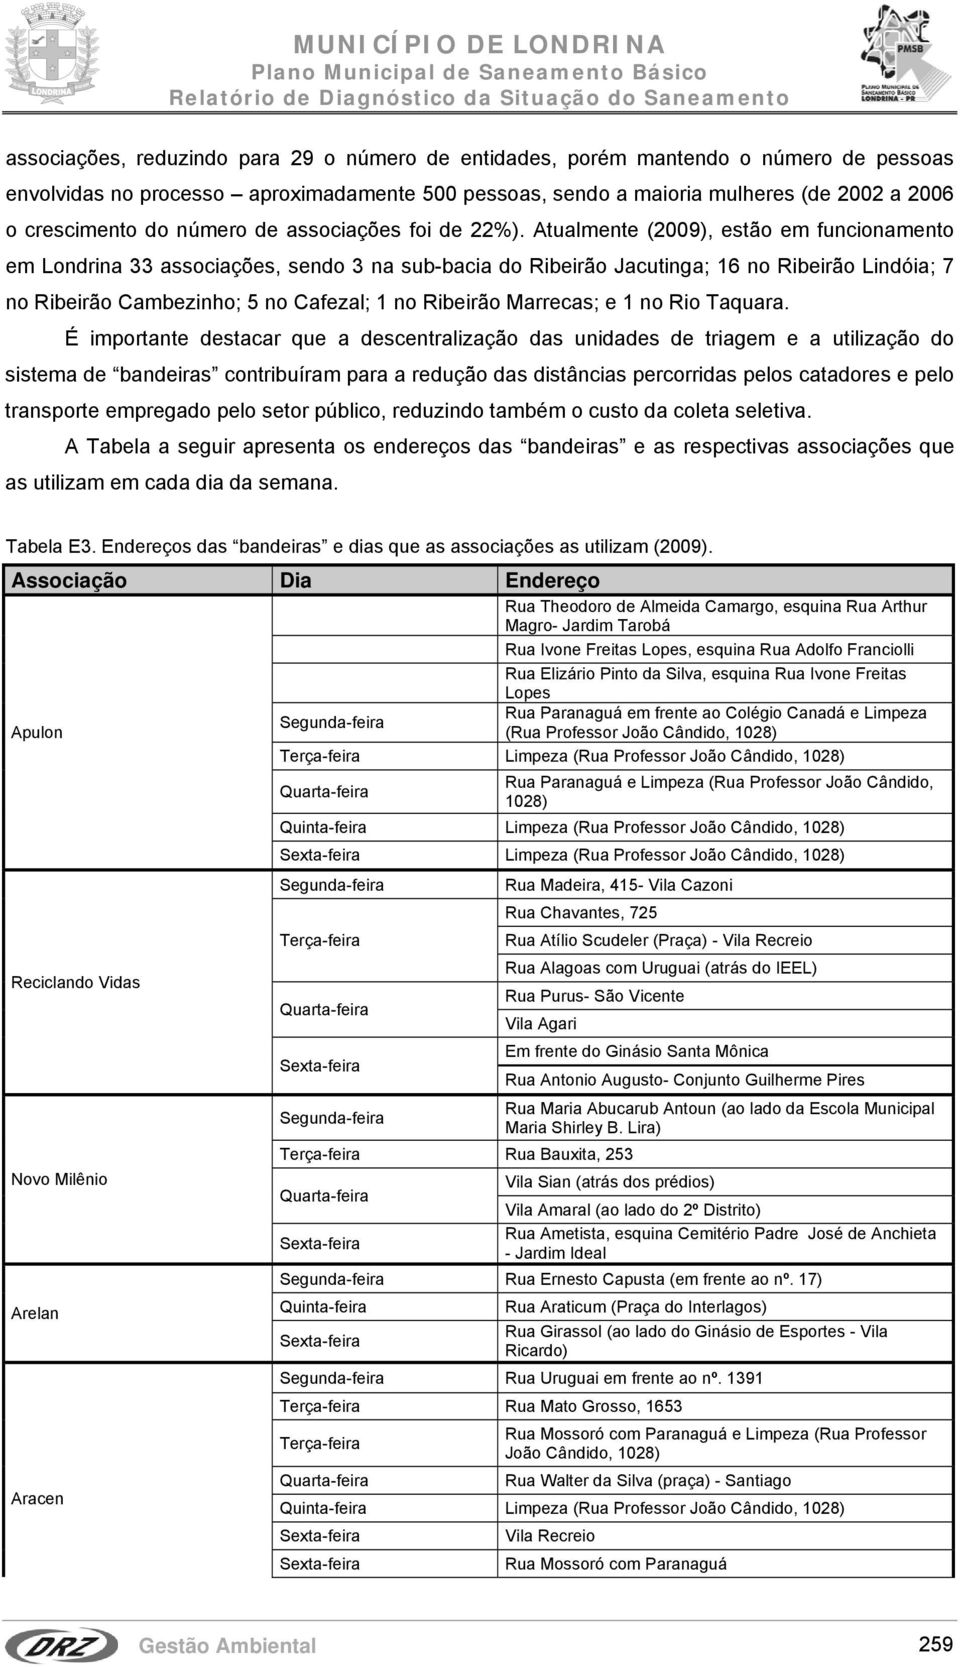 Atualmente (2009), estão em funcionamento em Londrina 33 associações, sendo 3 na sub-bacia do Ribeirão Jacutinga; 16 no Ribeirão Lindóia; 7 no Ribeirão Cambezinho; 5 no Cafezal; 1 no Ribeirão